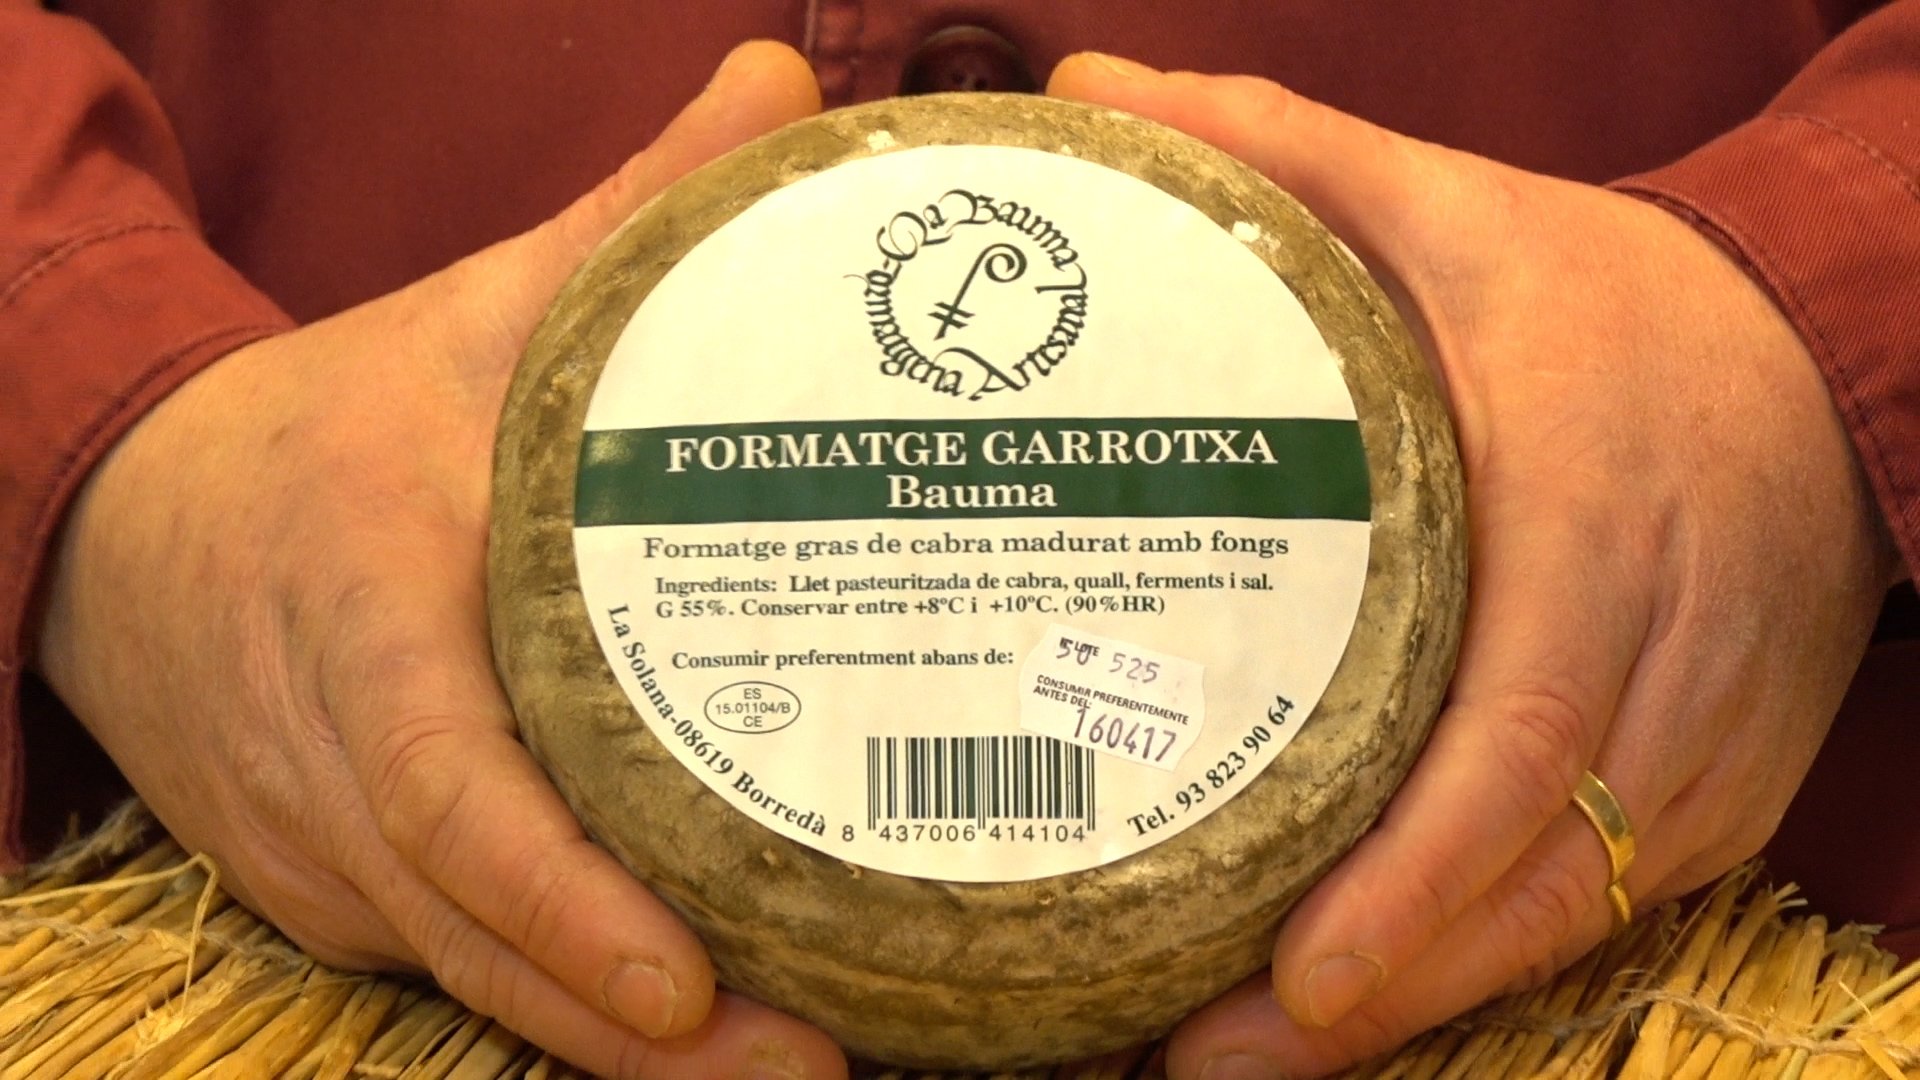 El formatge que copien a Espanya